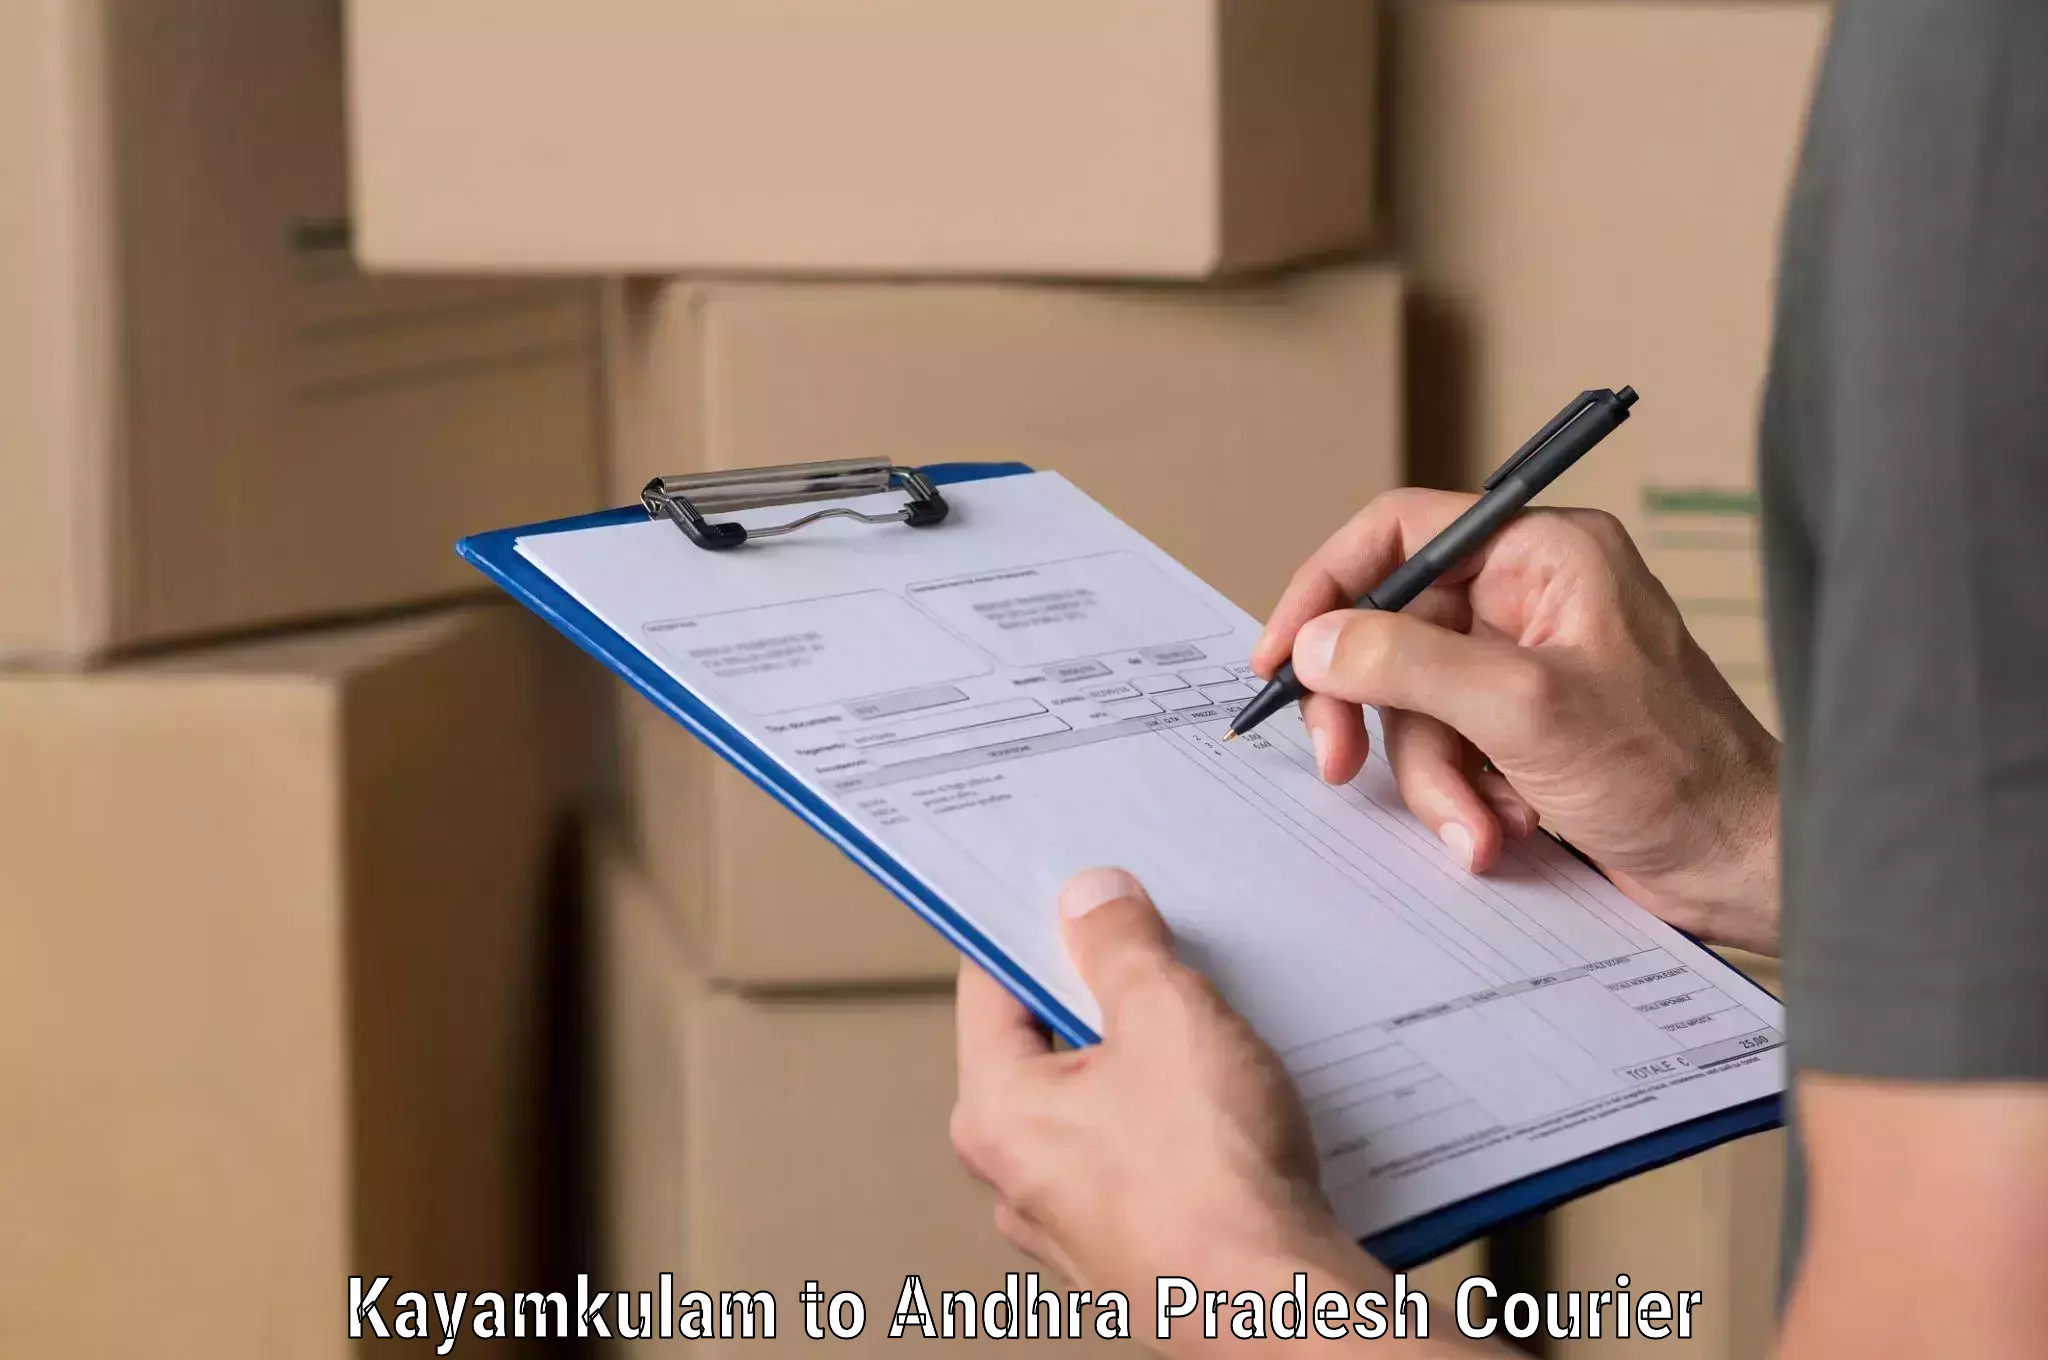 Fast delivery service in Kayamkulam to Venkatagirikota